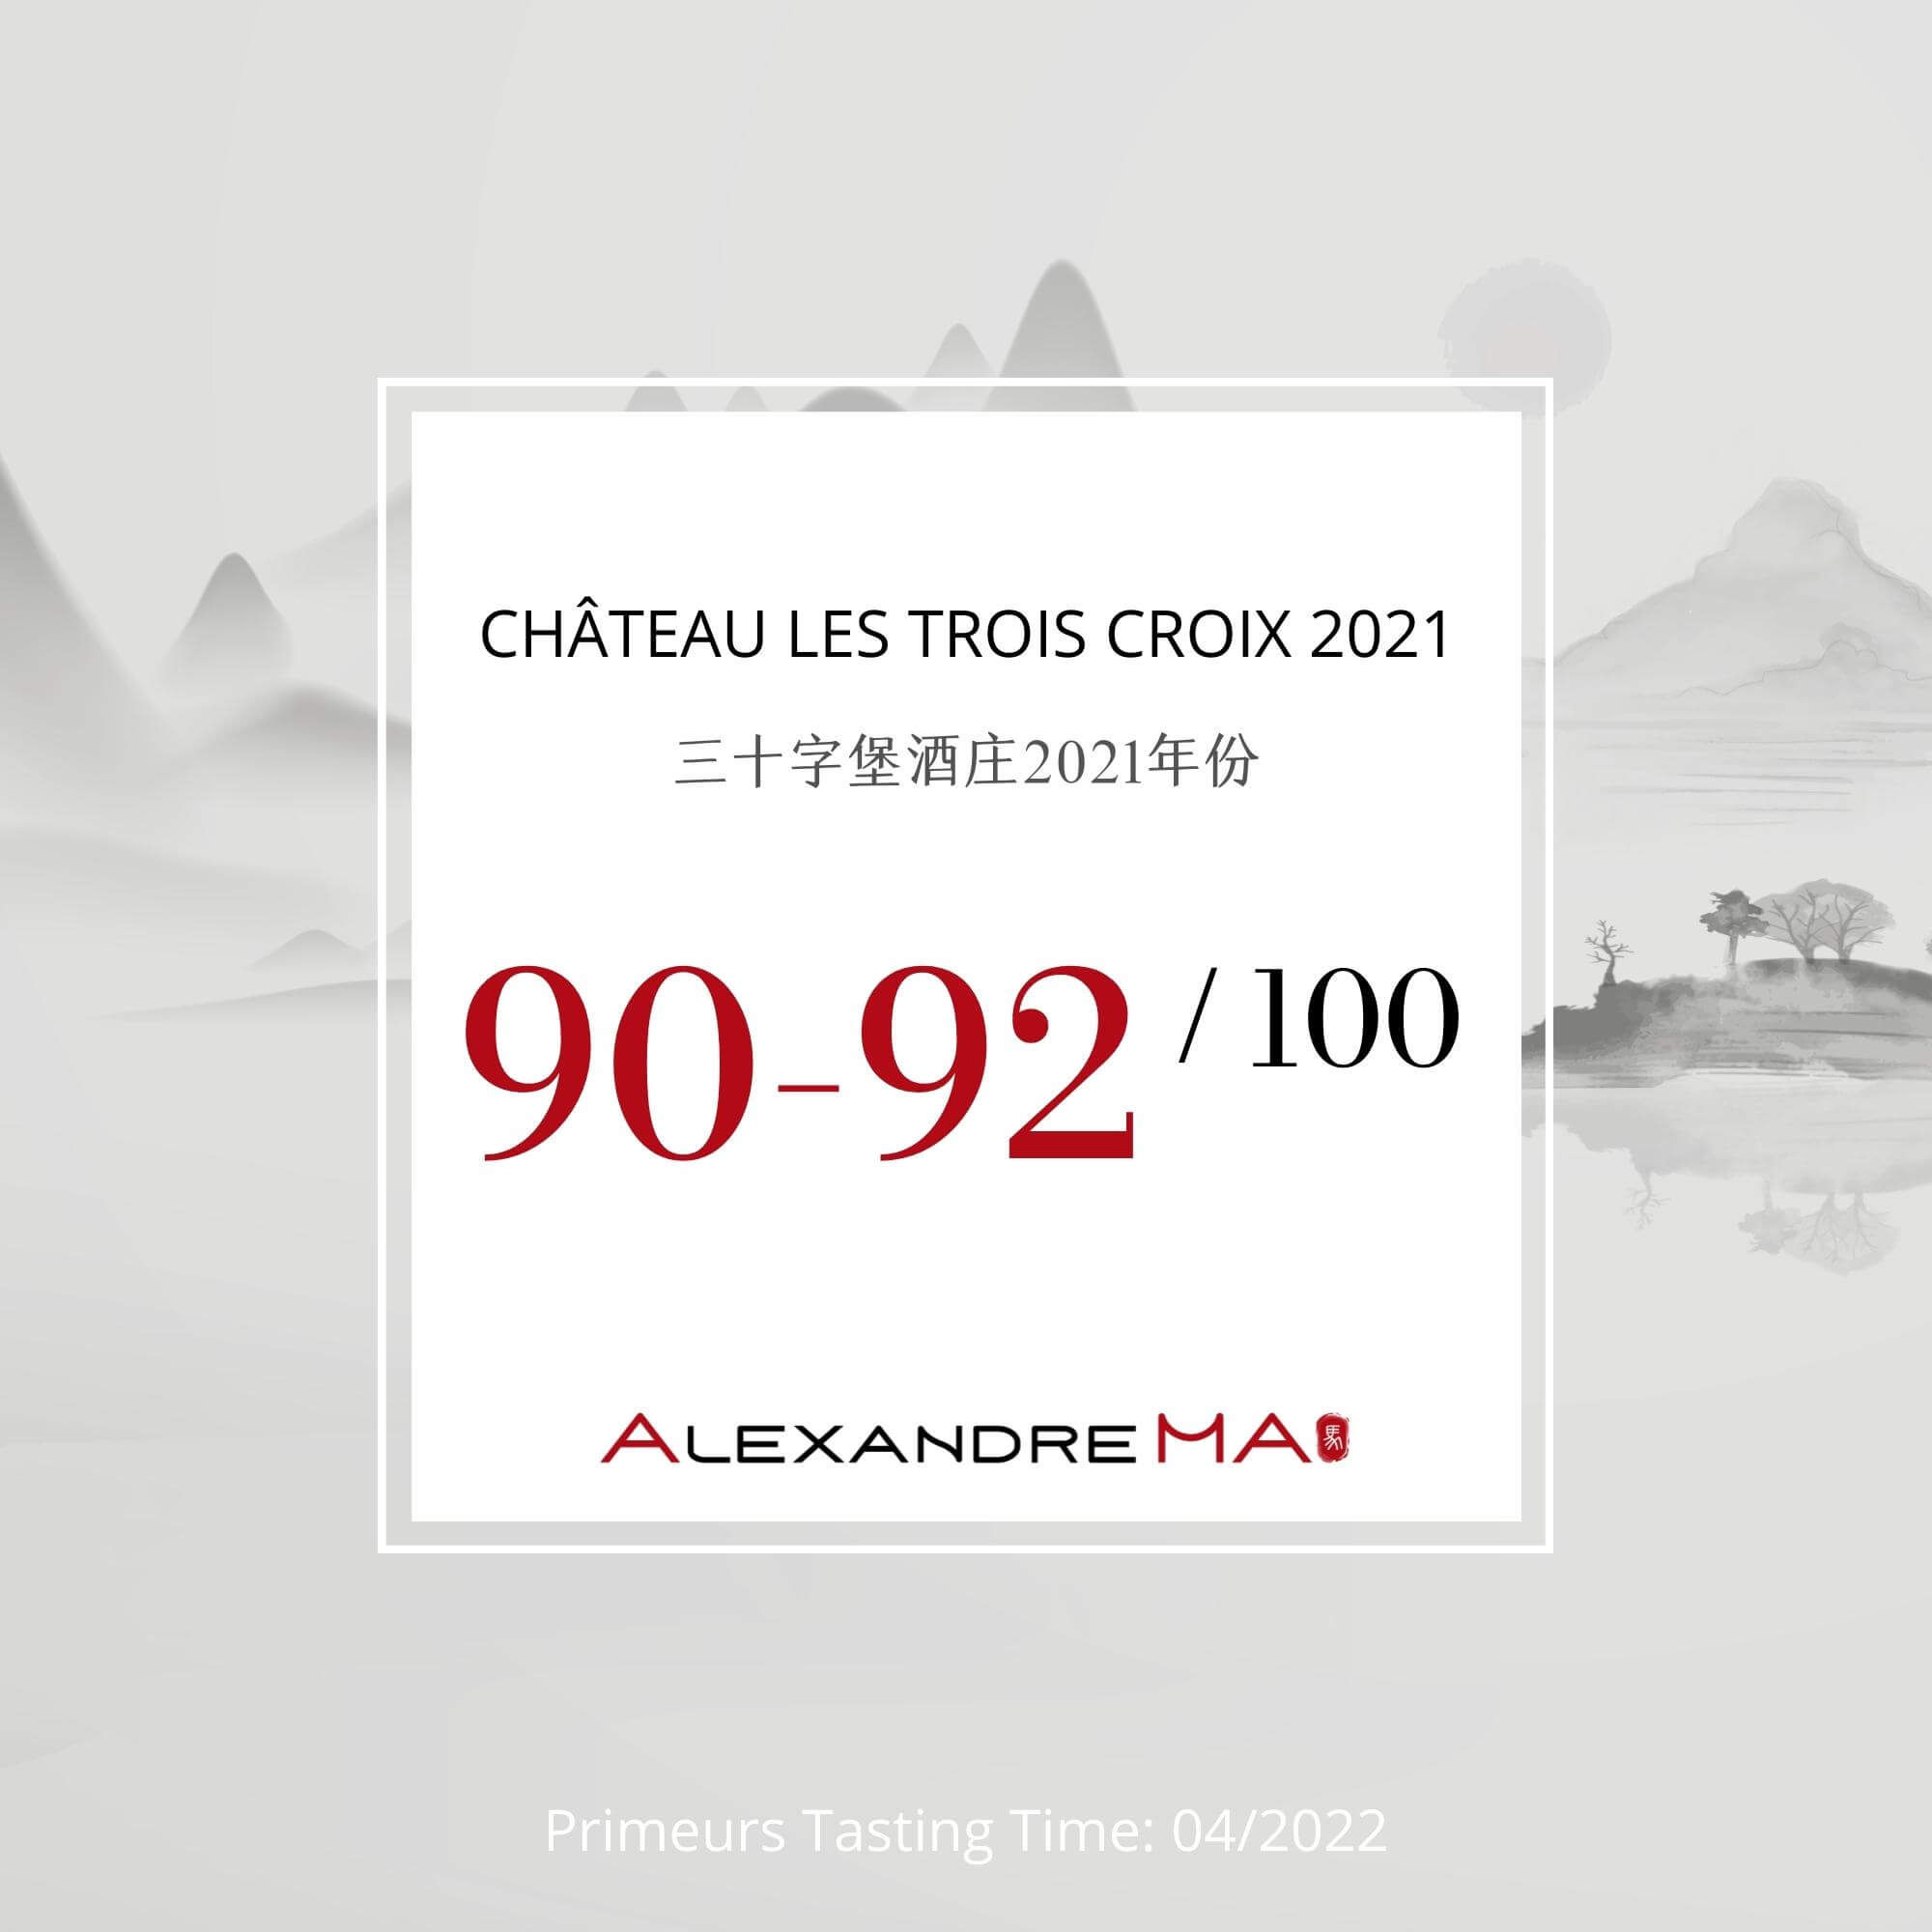 Château Les Trois Croix 2021 - Alexandre MA